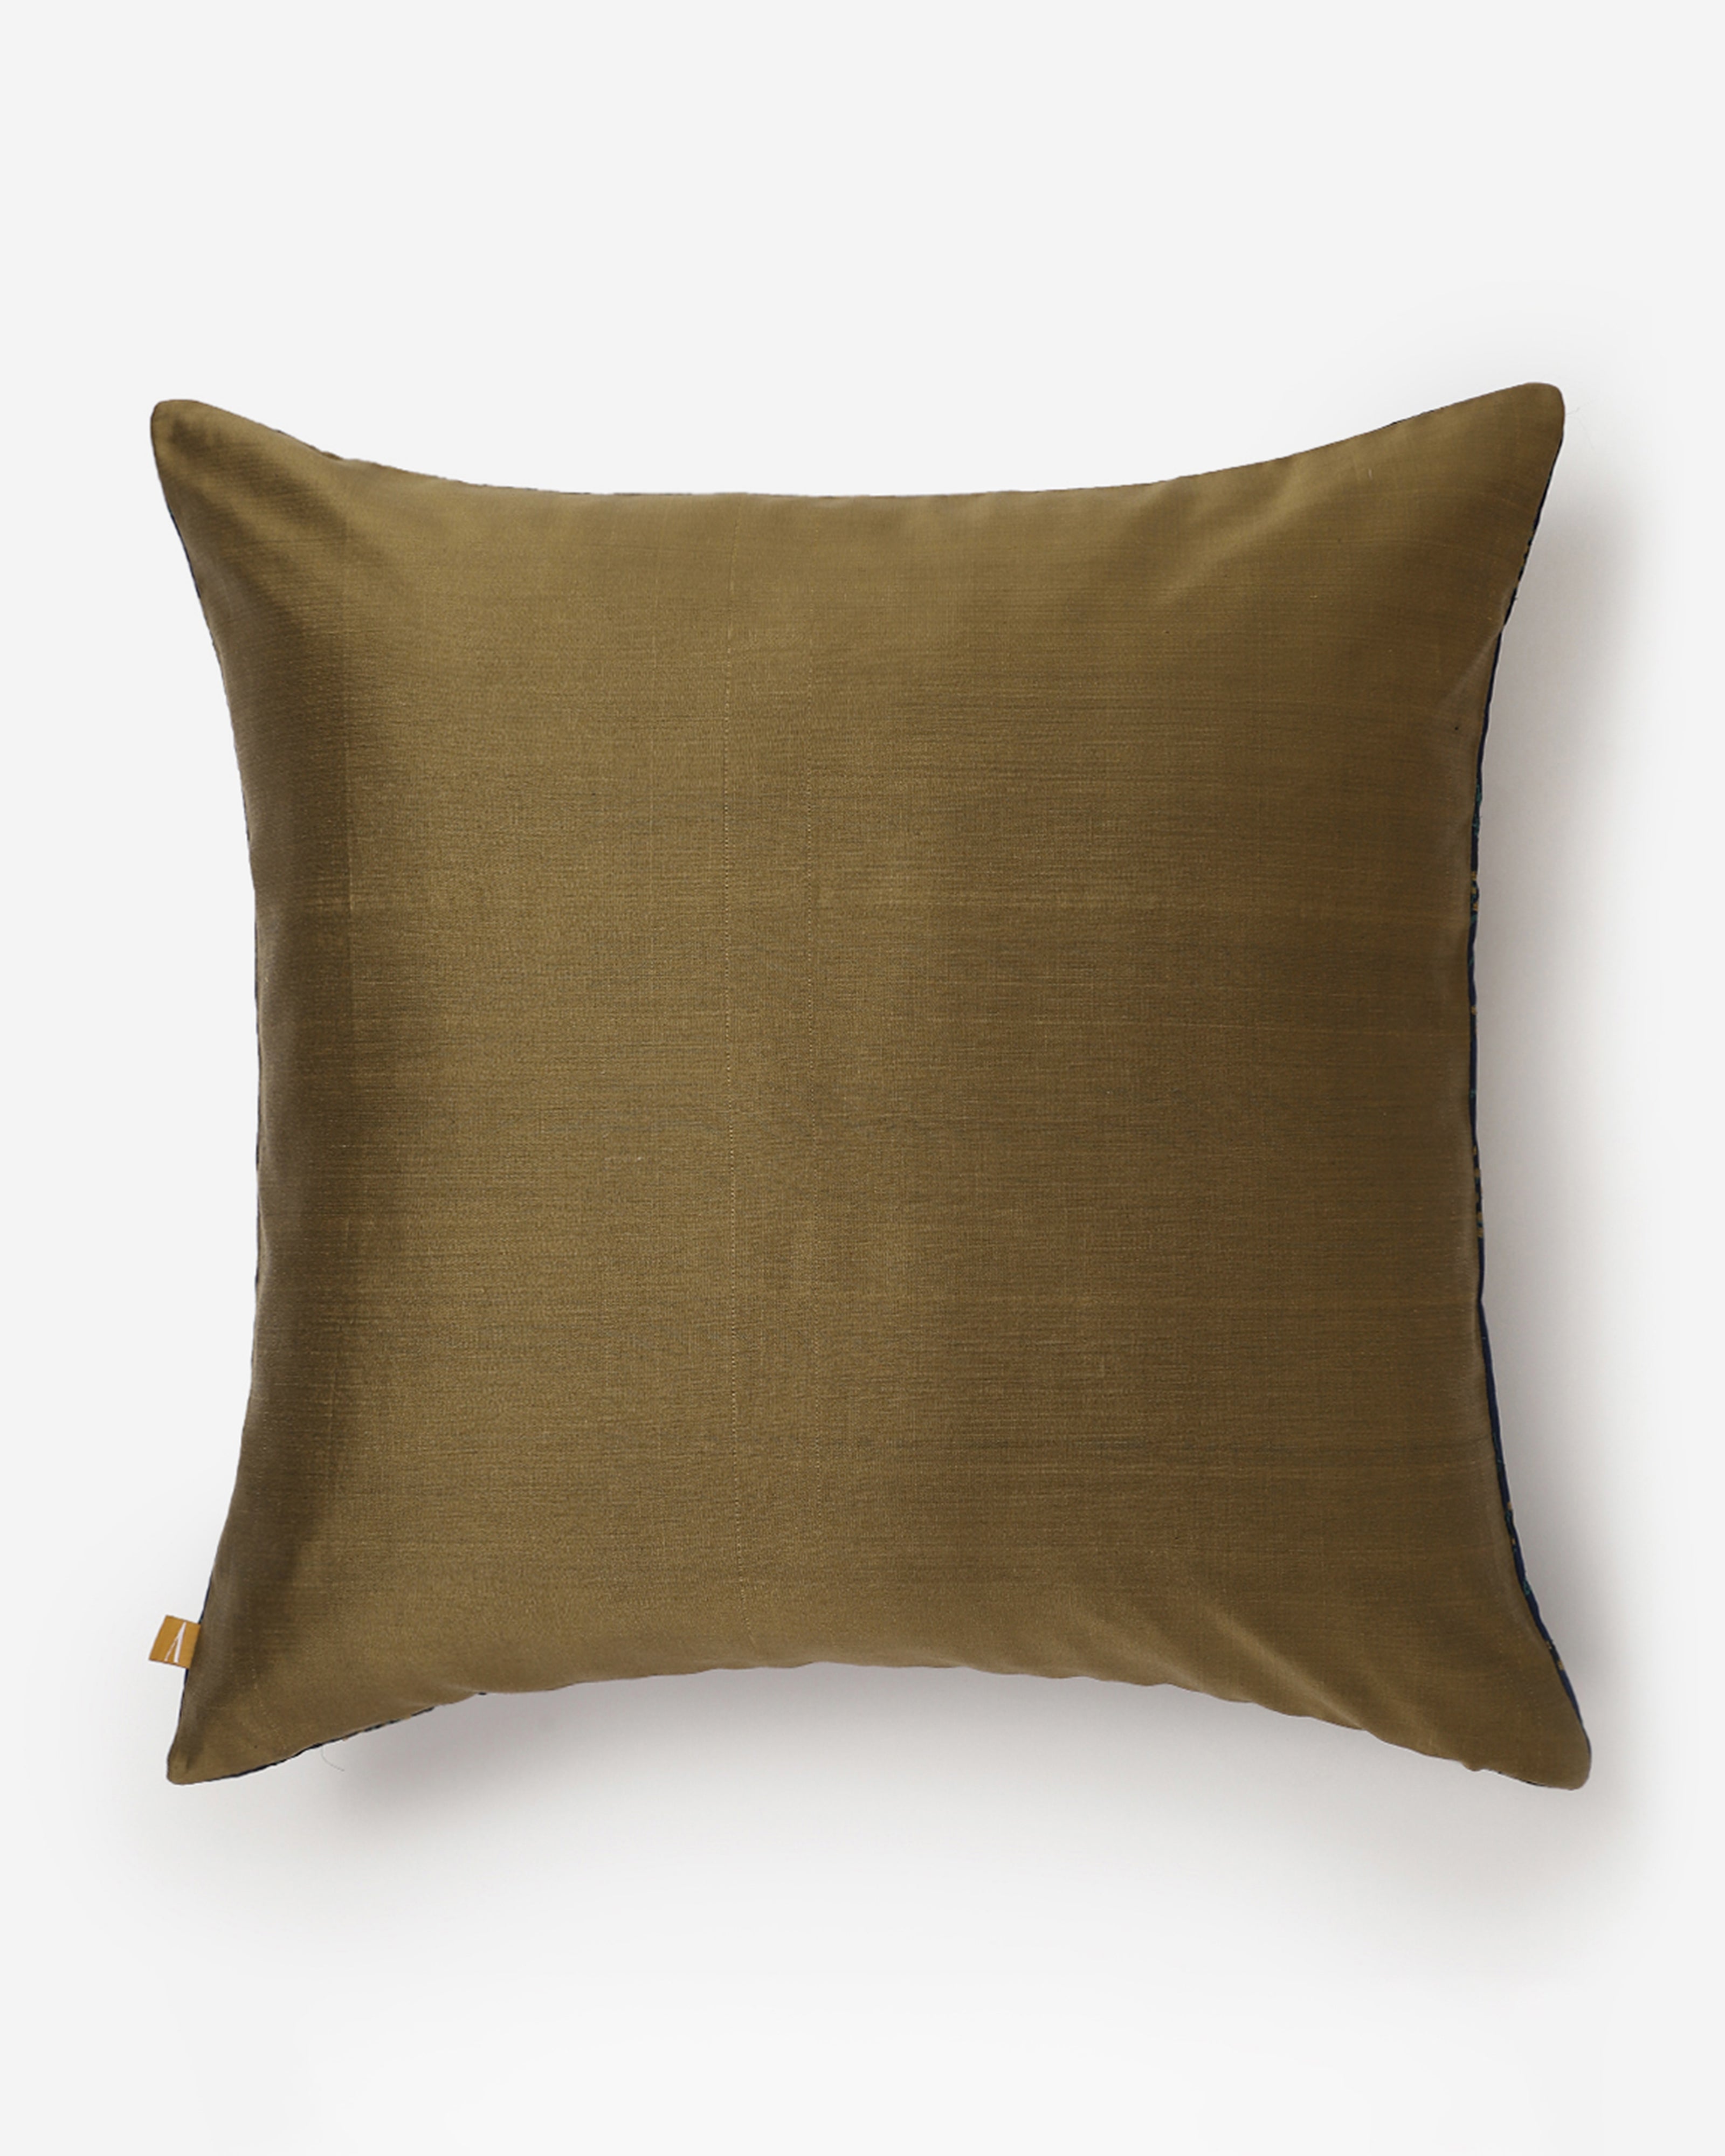 Lilian Satin Brocade Silk Cotton Cushion Cover